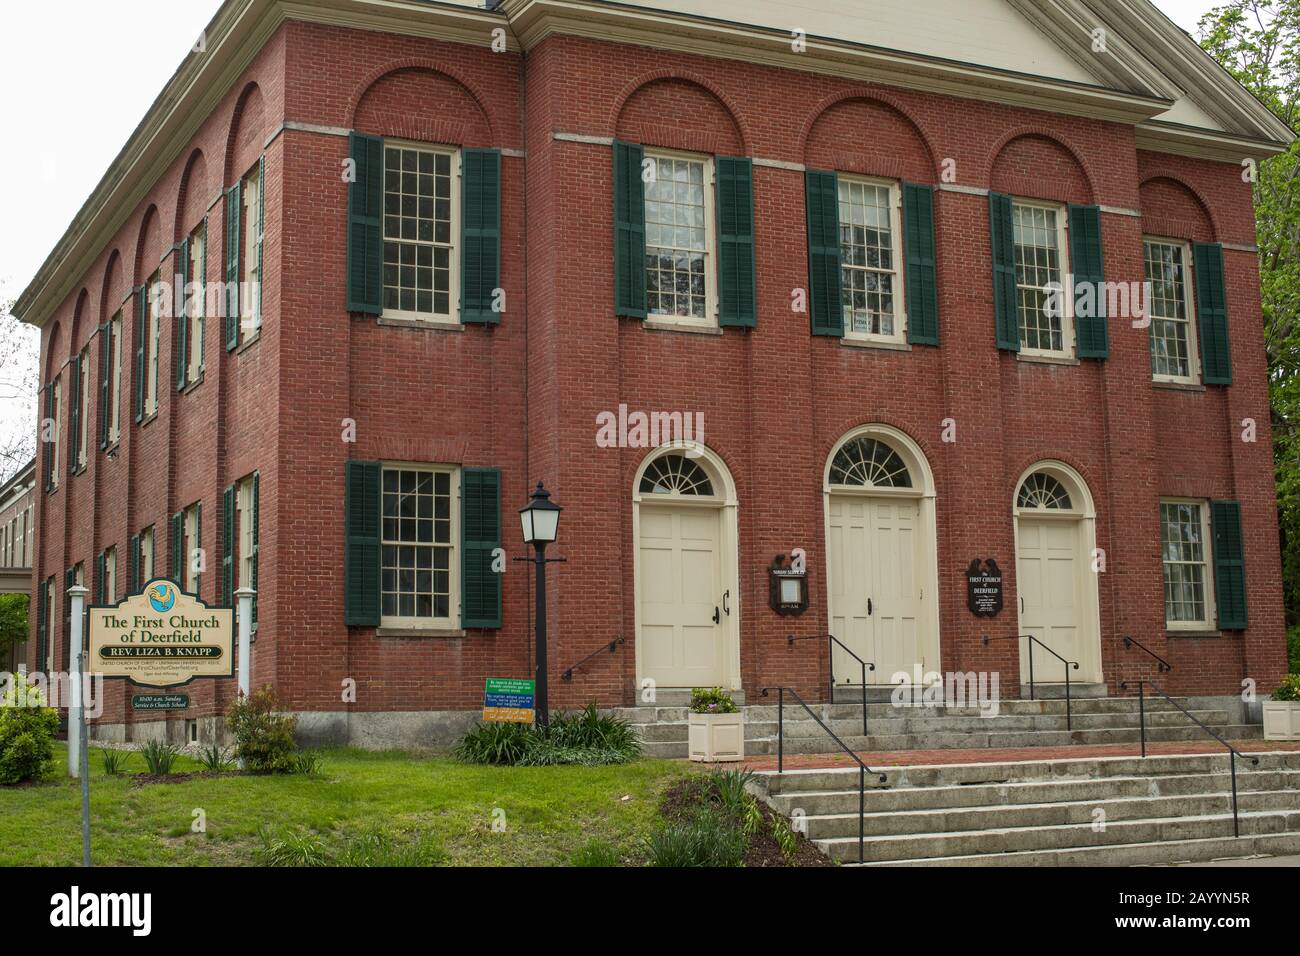 Prima Chiesa di Deerfield, Massachusetts, nel centro storico della città. Edifici in mattoni rossi adornano questa strada principale nello storico Deerfield, Massachusetts. Foto Stock